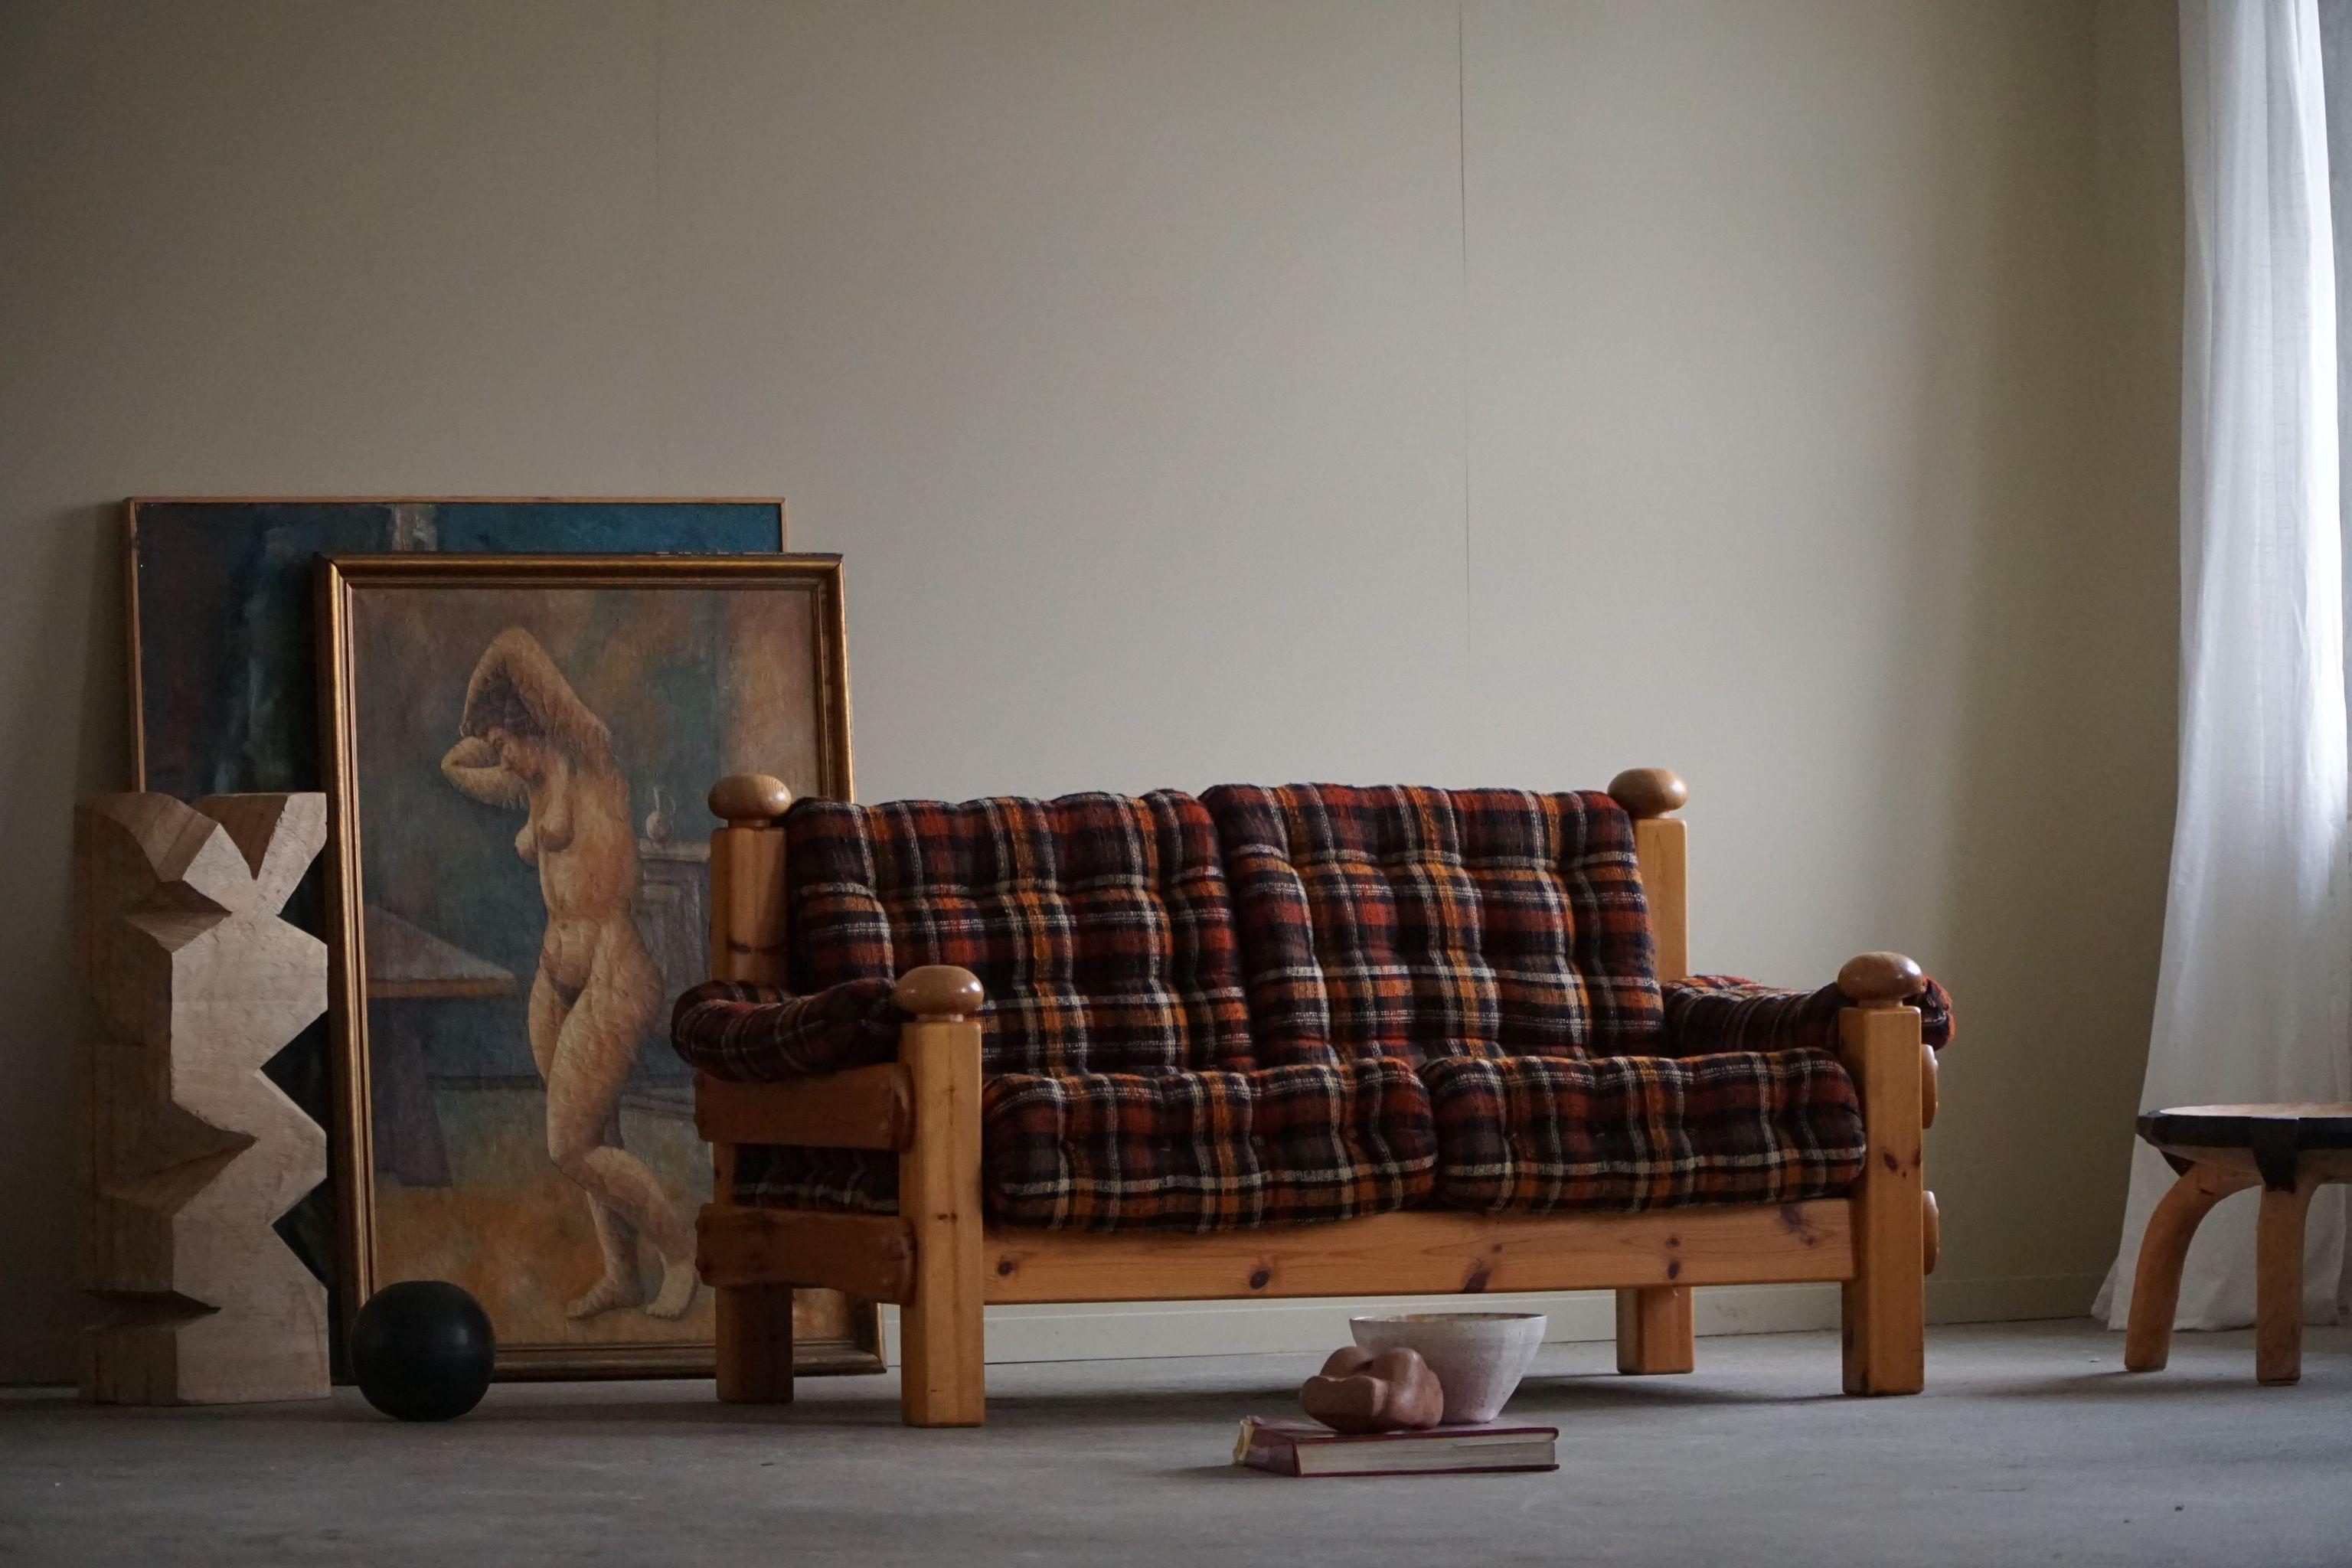 Ein bequemes Zweisitzer-Sofa, gepolstert mit einem Vintage-Stoff. 
Wird dem schwedischen Designer Sven Larsson zugeschrieben. Hergestellt in den 1970er Jahren.
Dieses solide Sofa passt zu vielen Einrichtungsstilen. Ein modernes, klassisches, Art